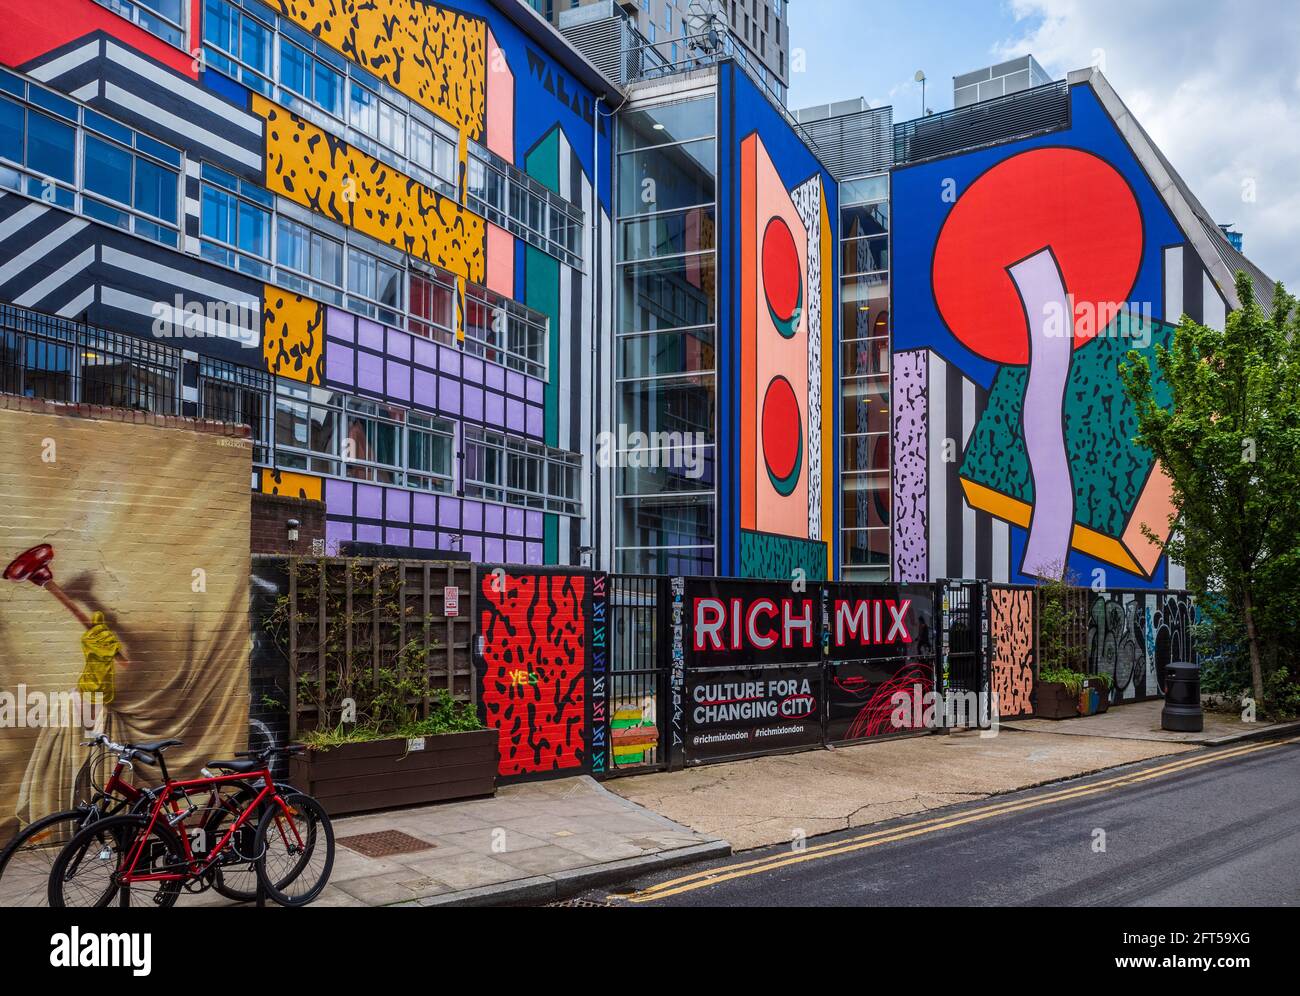 Rich Mix Shoreditch London, musica hub per le arti della comunità, danza e parlato, spettacoli di parole e arte e proiezioni di film. Aperto nel 2006. Murale Camille Walala. Foto Stock